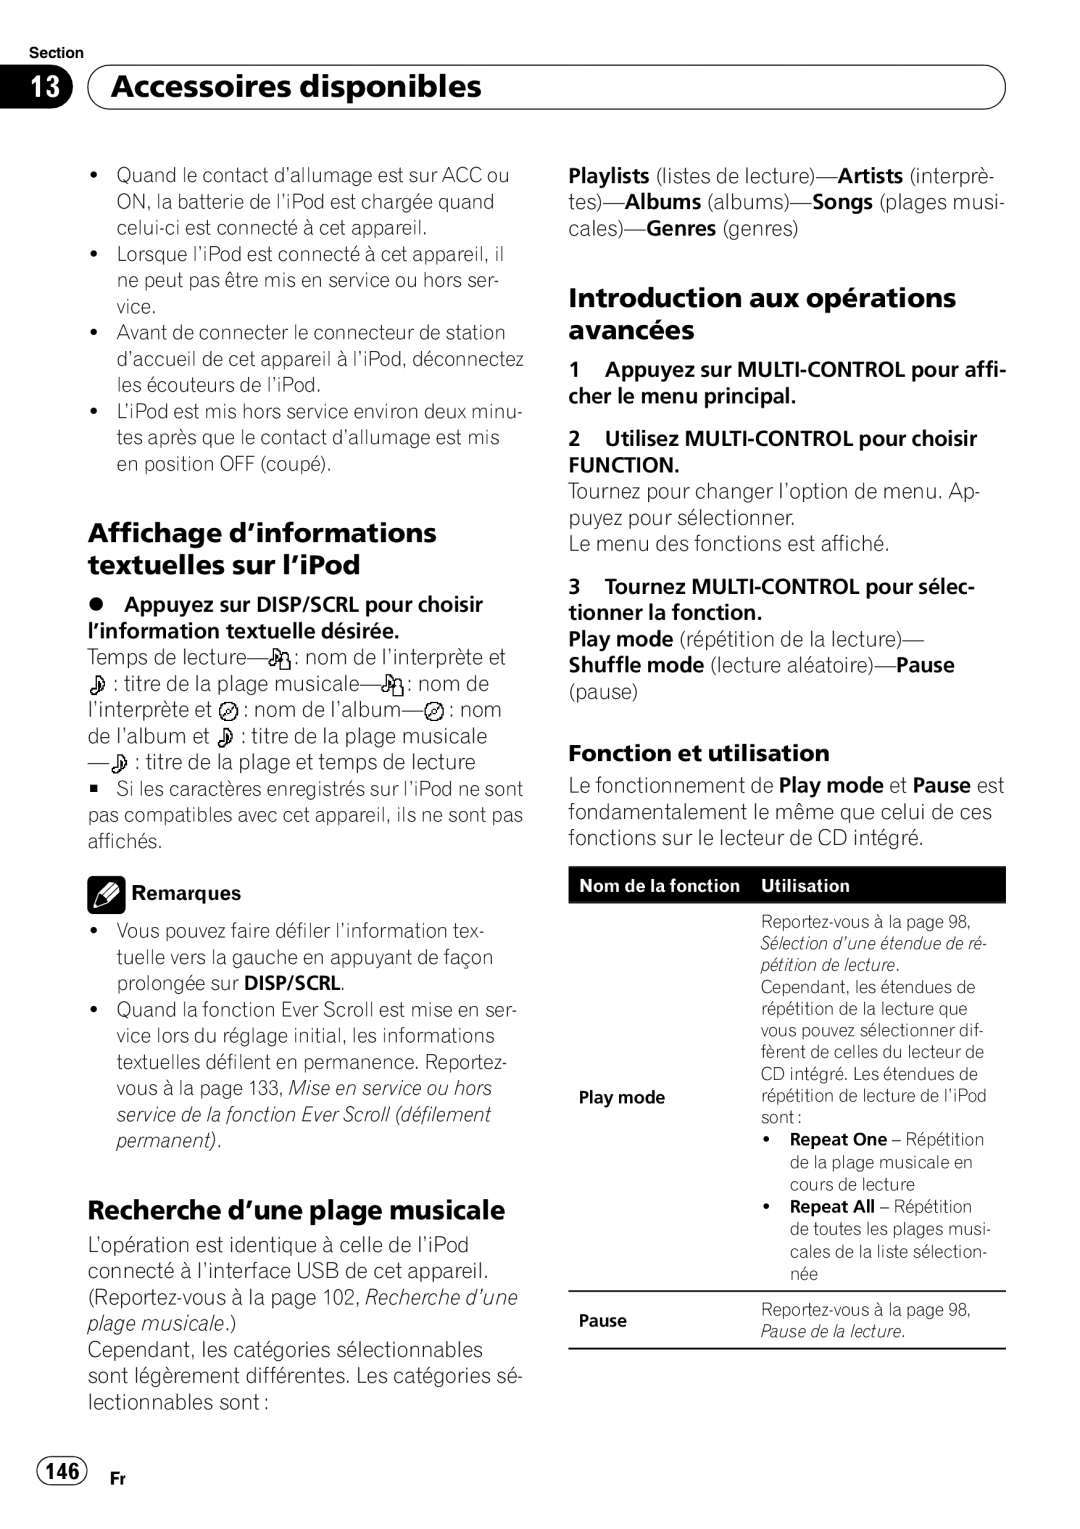 Pioneer DEH-P7100BT operation manual Affichage d’informations textuelles sur l’iPod, Recherche d’une plage musicale, 146 Fr 